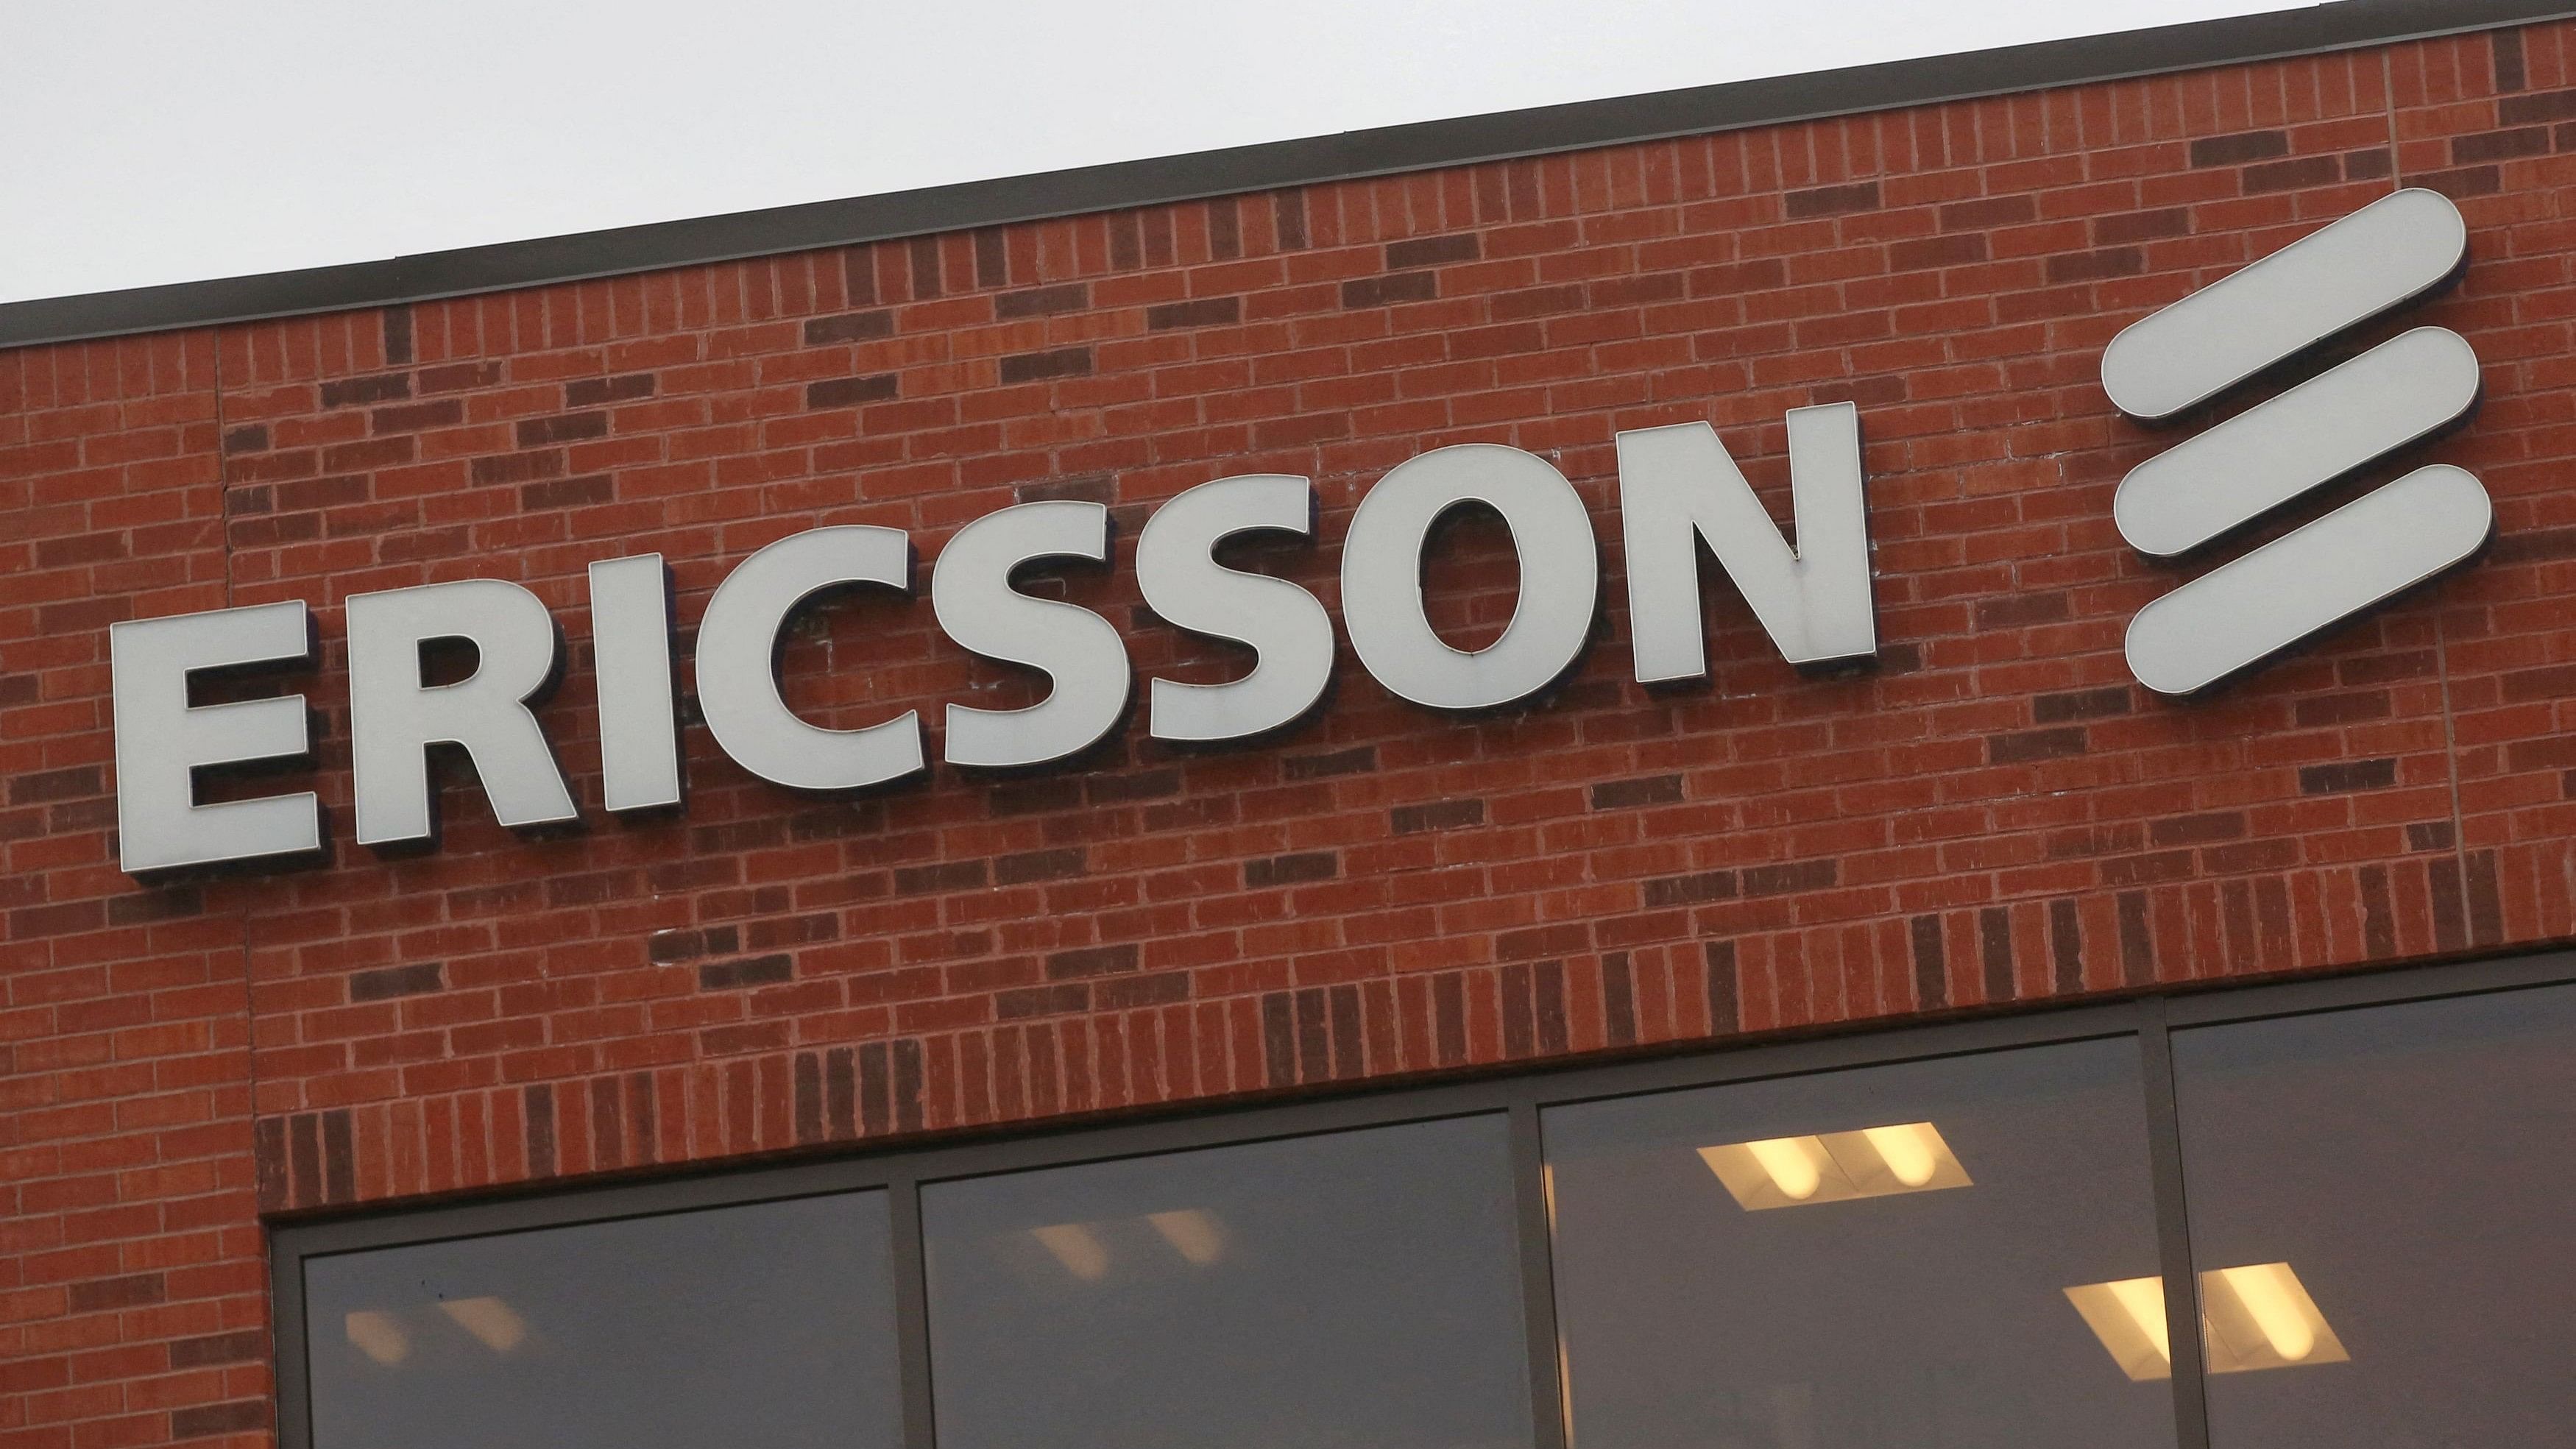 <div class="paragraphs"><p>Ericsson logo.</p></div>